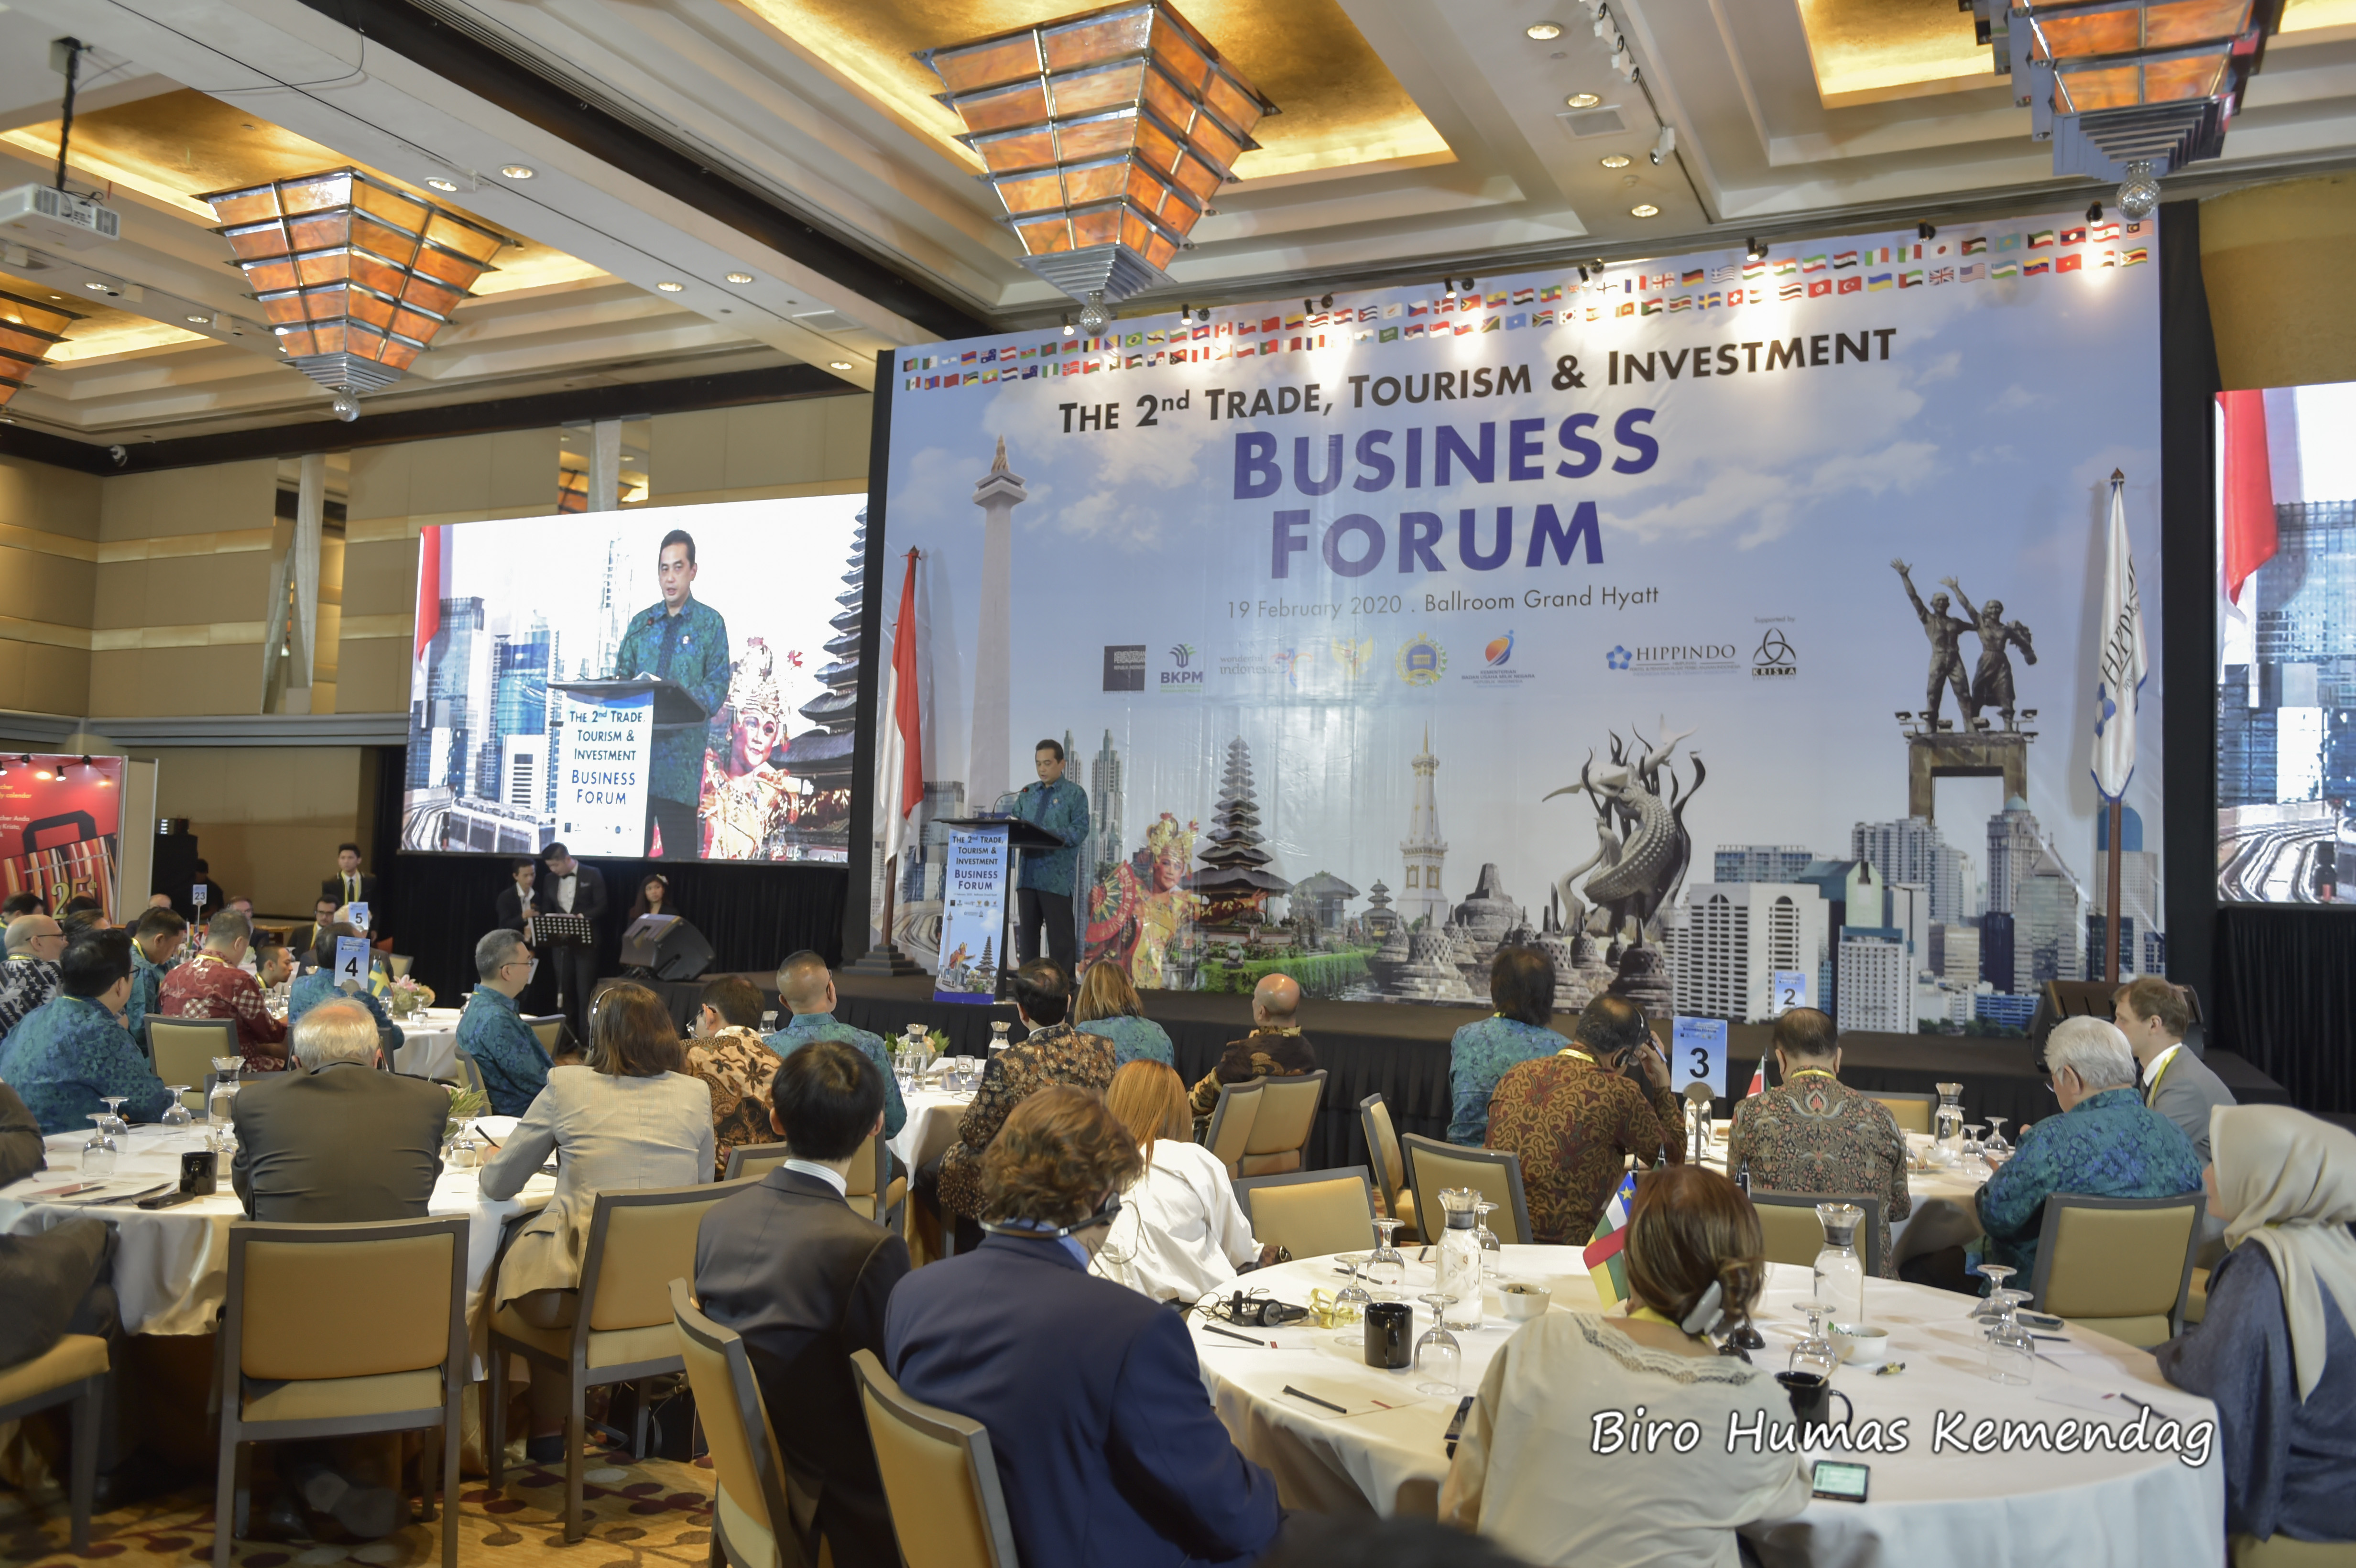 Forum Bisnis Perdagangan, Pariwisata, dan Investasi ke-2